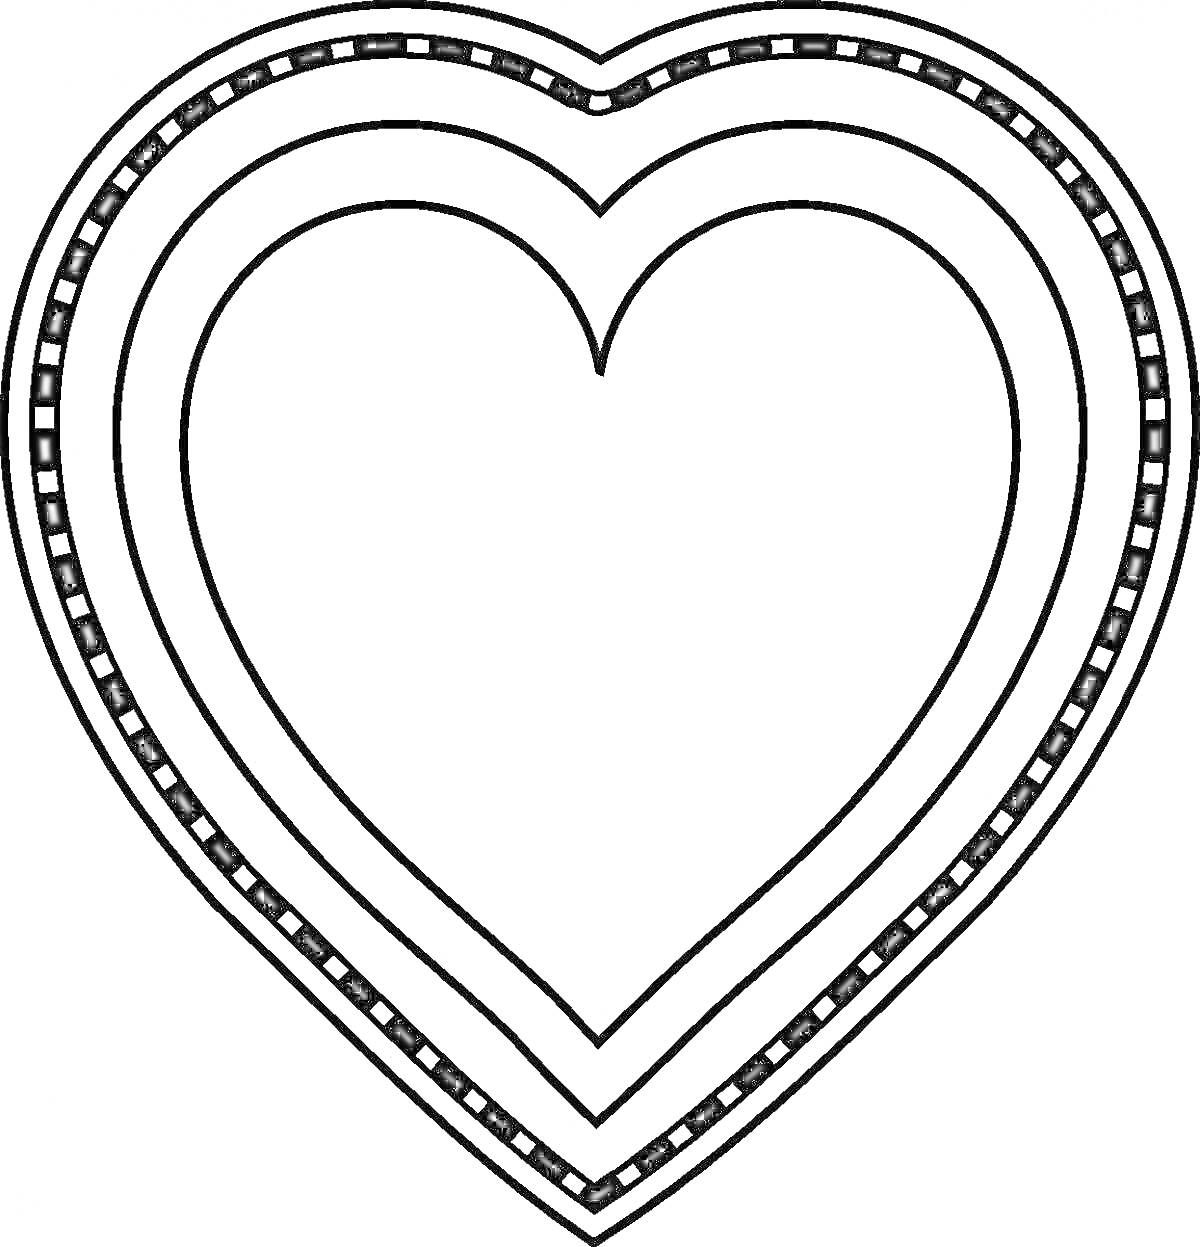 Раскраска Сердце с тремя слоями, внутри внешний слой с квадратиками